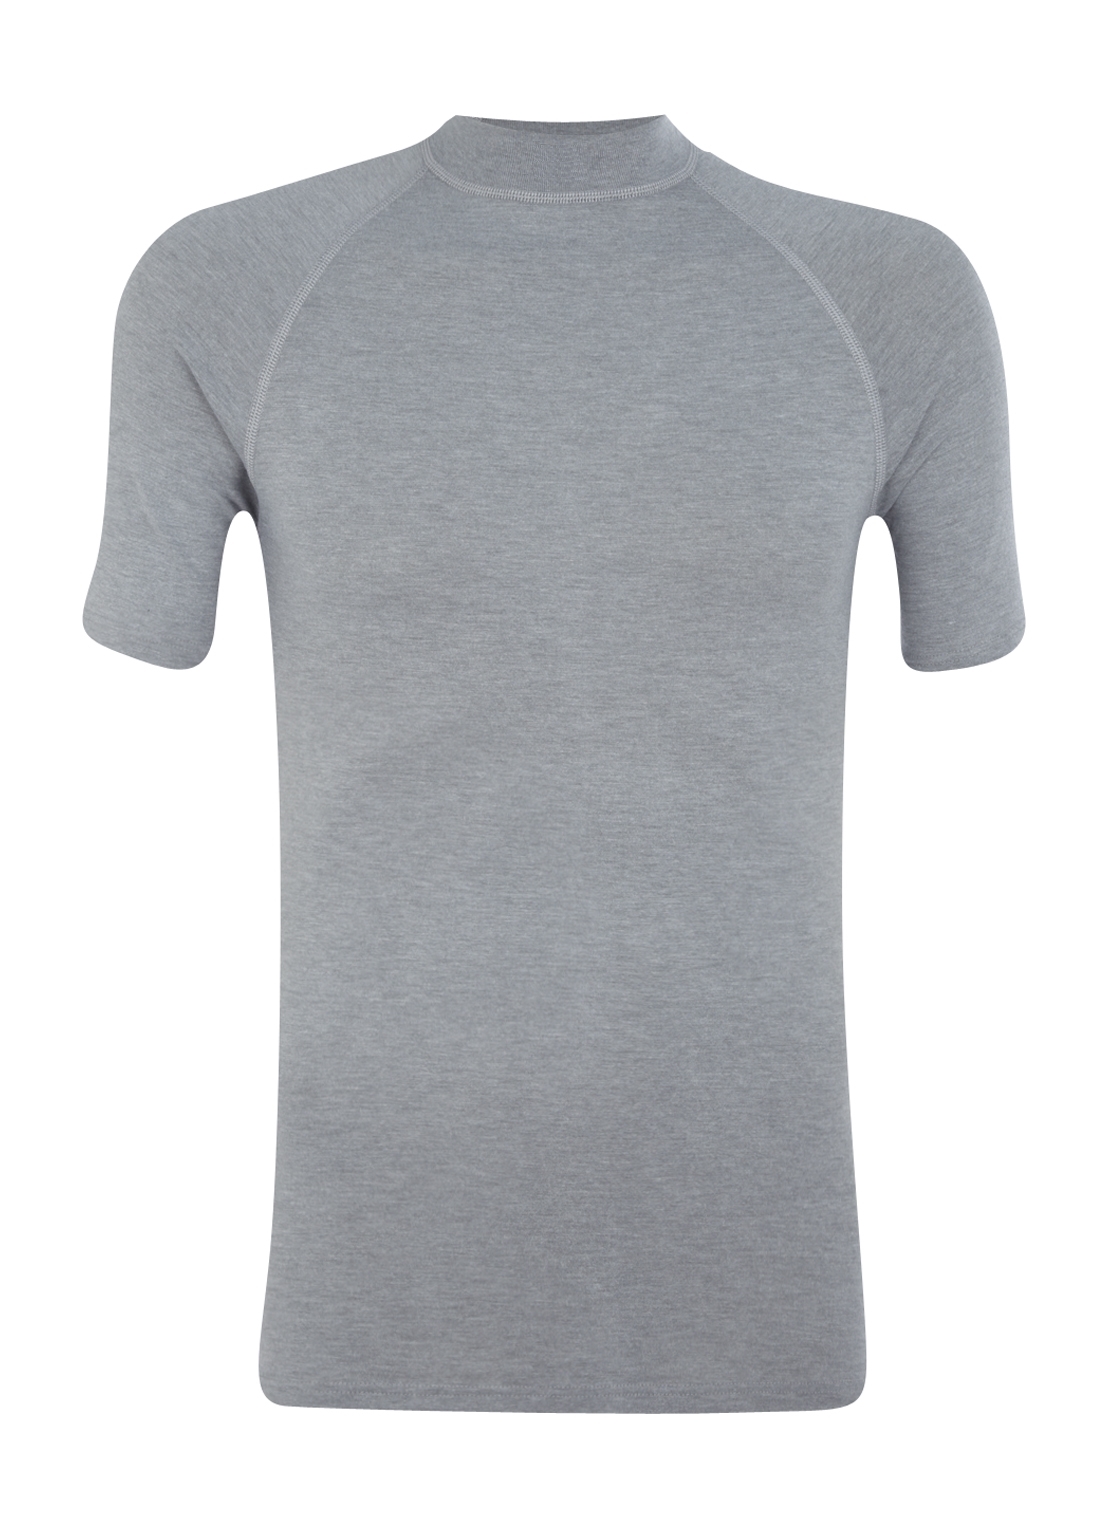 Zeeslak Heerlijk Verslaafd RJ Bodywear, thermo T-shirt, grijs - Gratis bezorgd